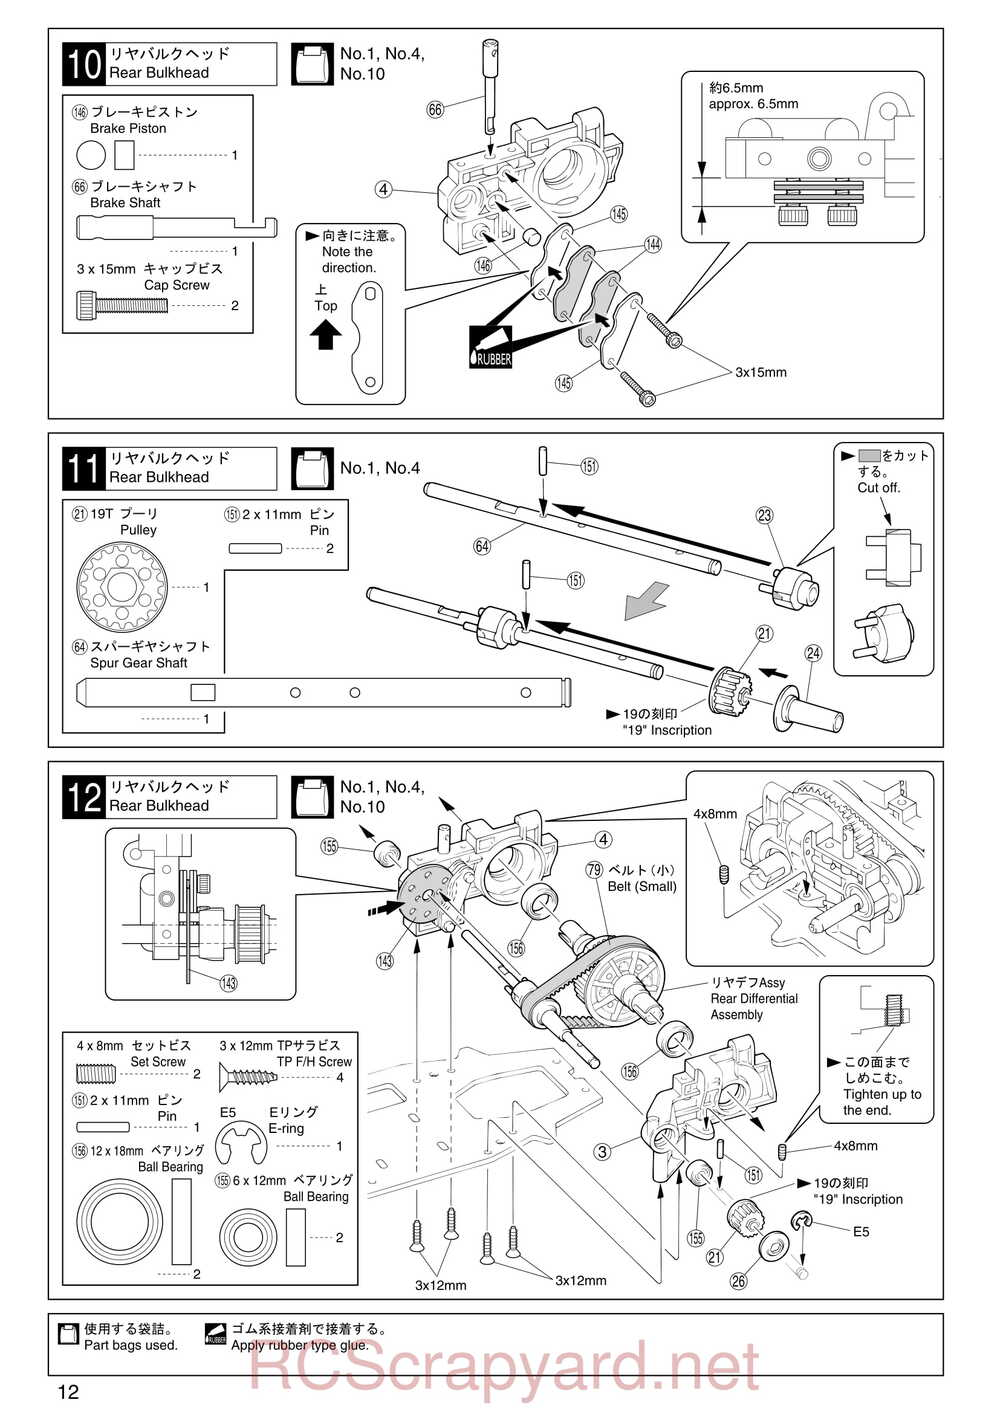 Kyosho - 31255 - V-One RR Evolution - Manual - Page 12